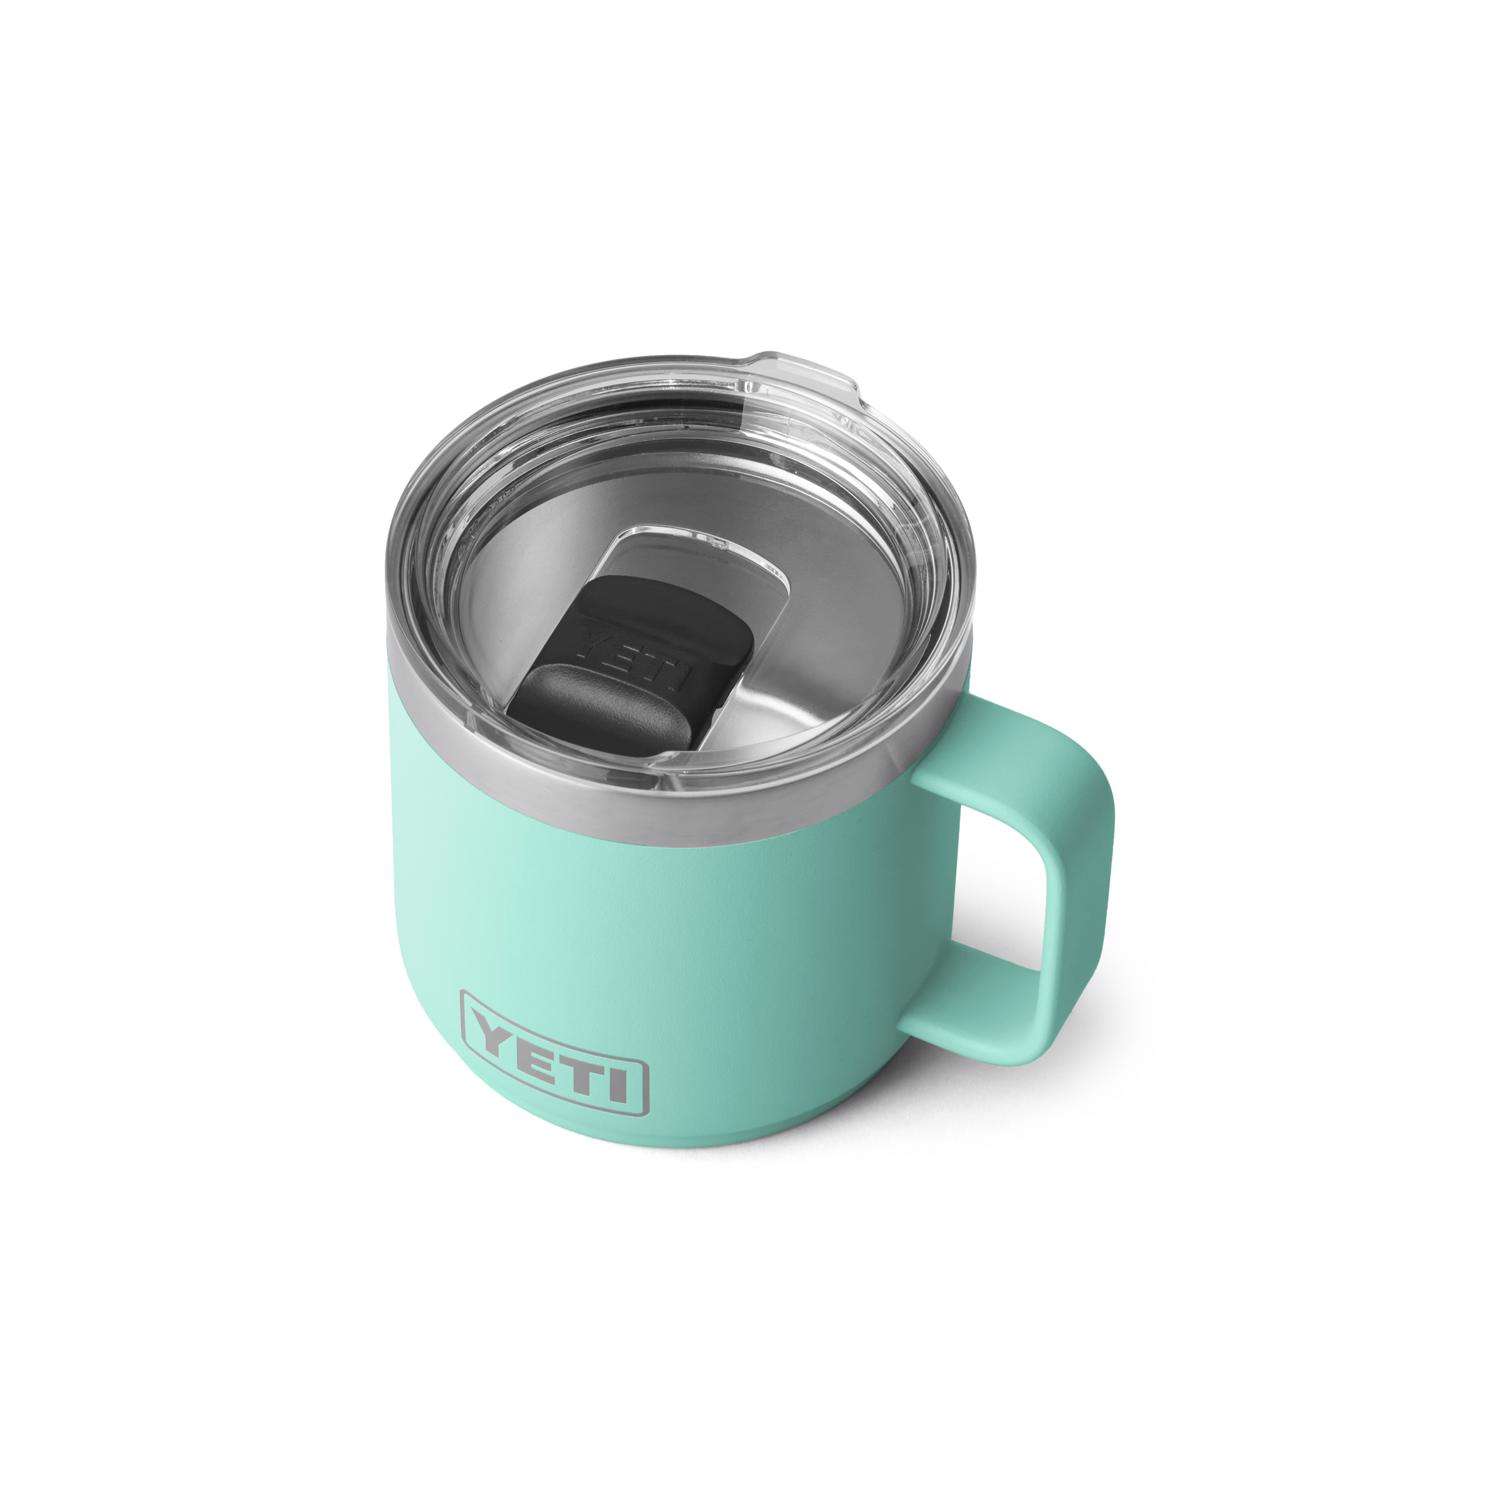 YETI Rambler 14 oz Seafoam BPA Free Mug with MagSlider Lid - Ace Hardware